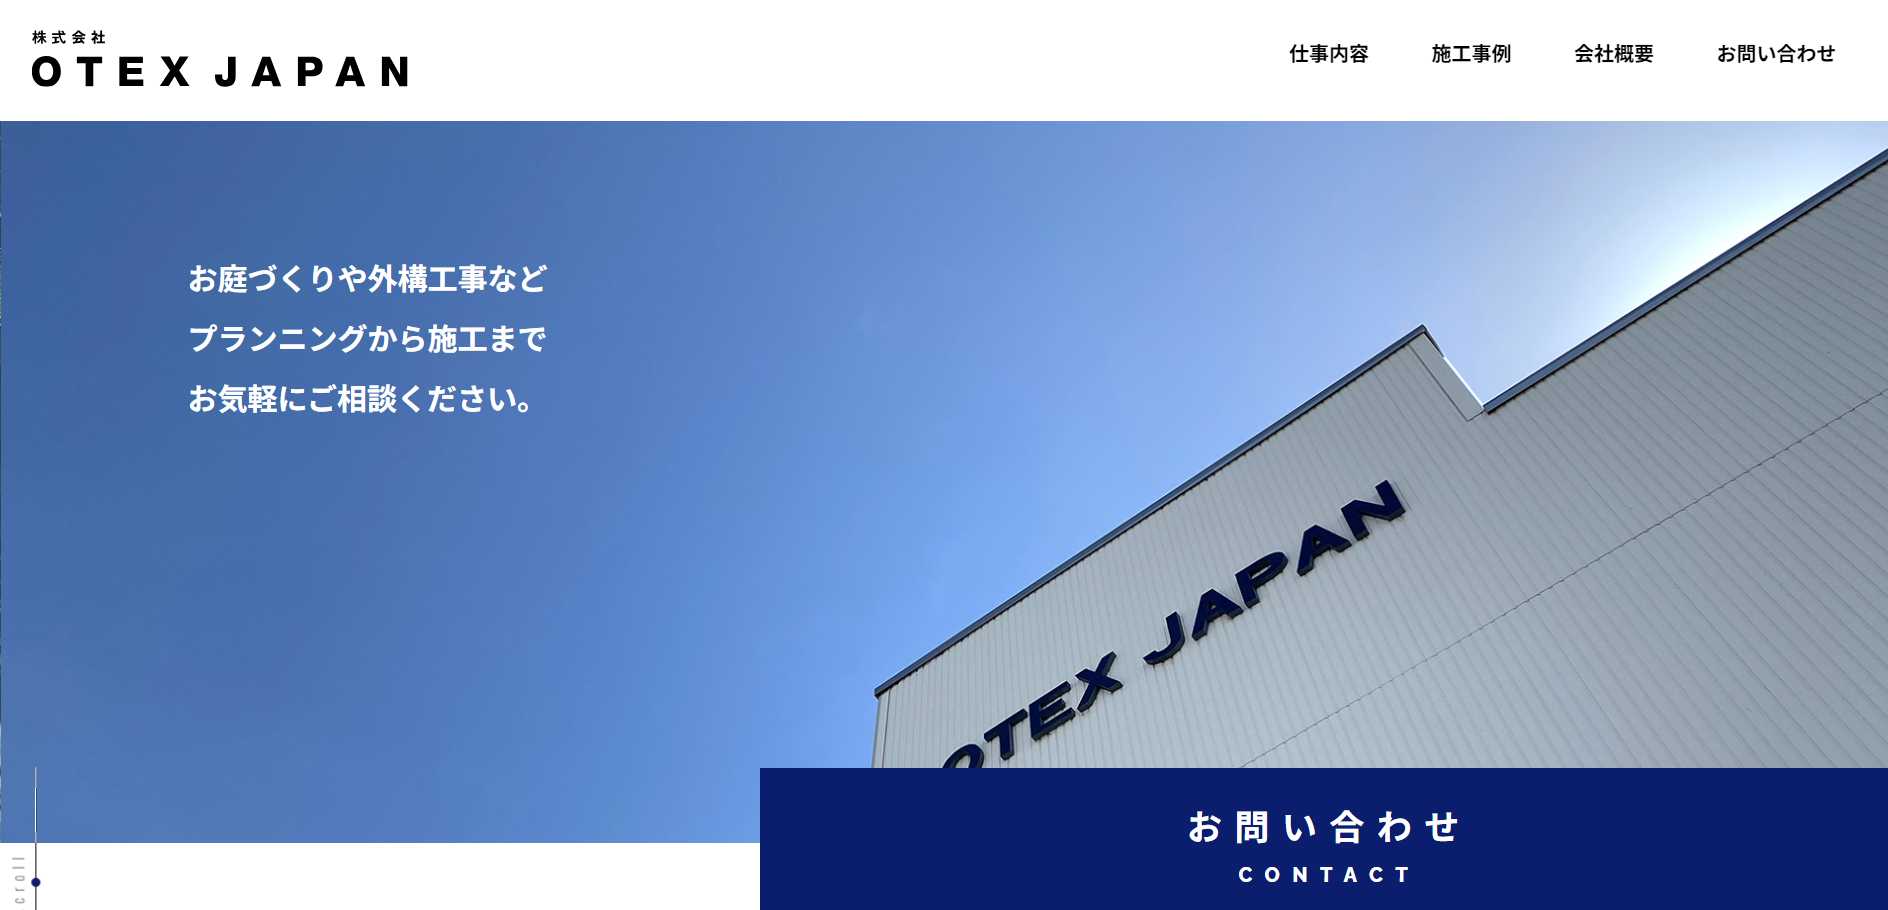 長野県で評判のおすすめ外構業者ランキング 第4位 株式会社 OTEX JAPAN（オーテックスジャパン）